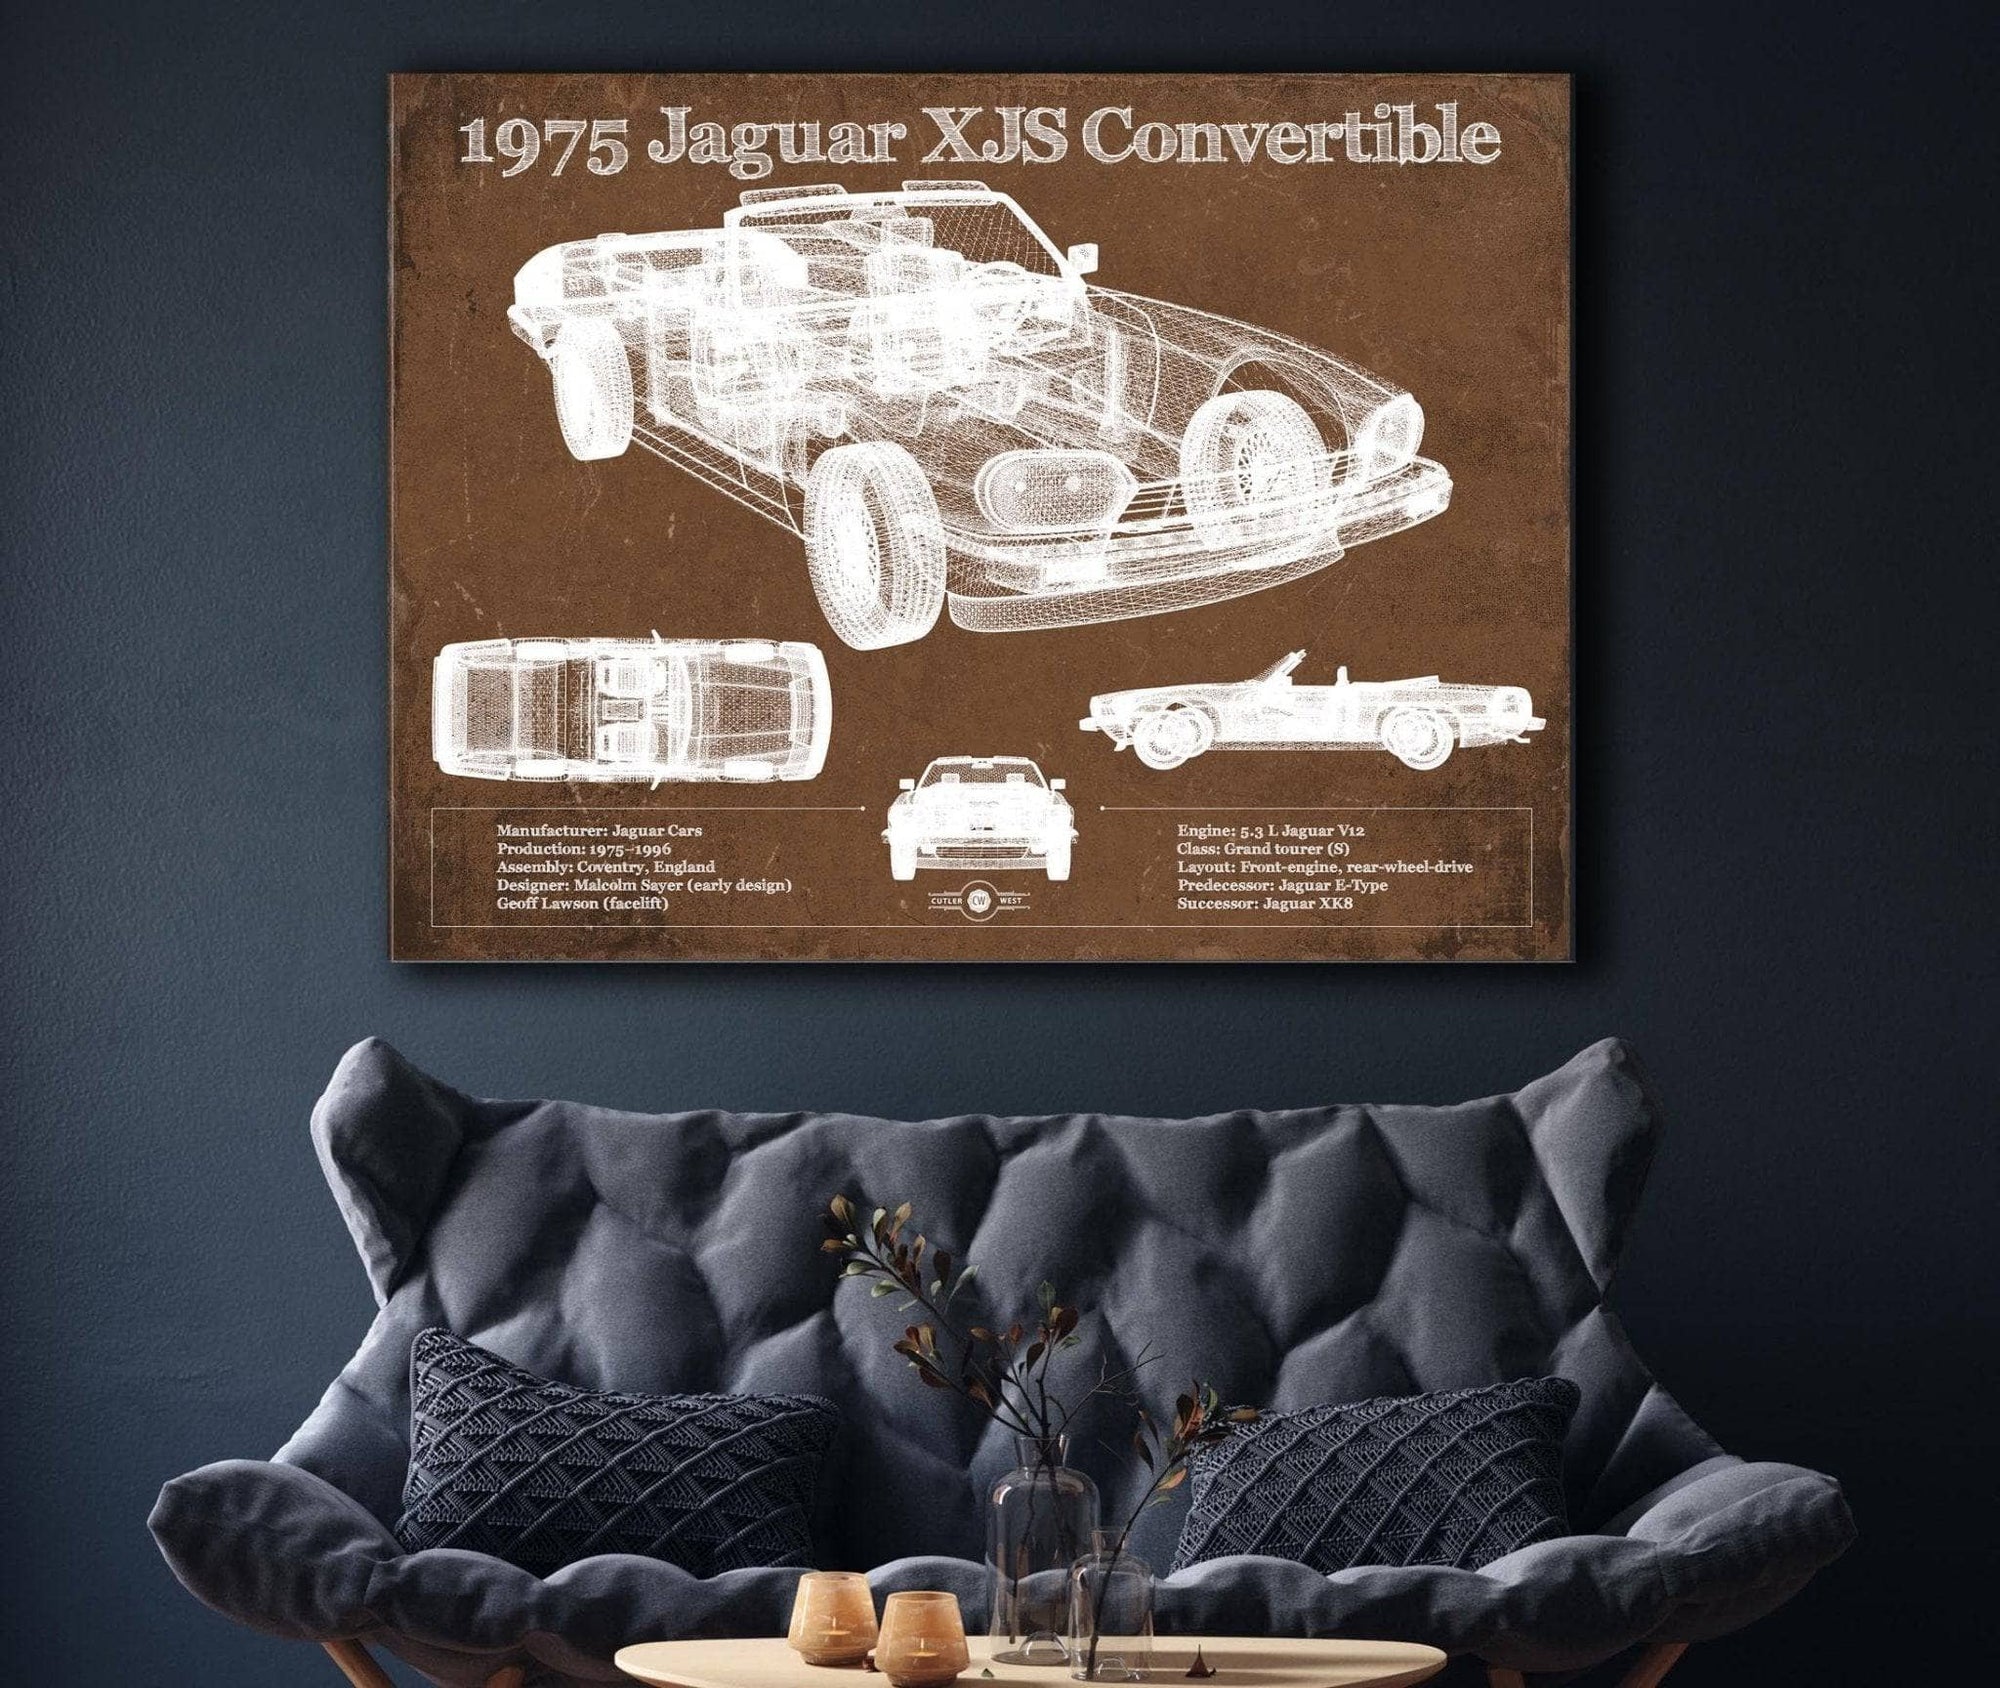 Cutler West Jaguar Collection 1975 Jaguar Xjs Convertible Vintage Blueprint Auto Print